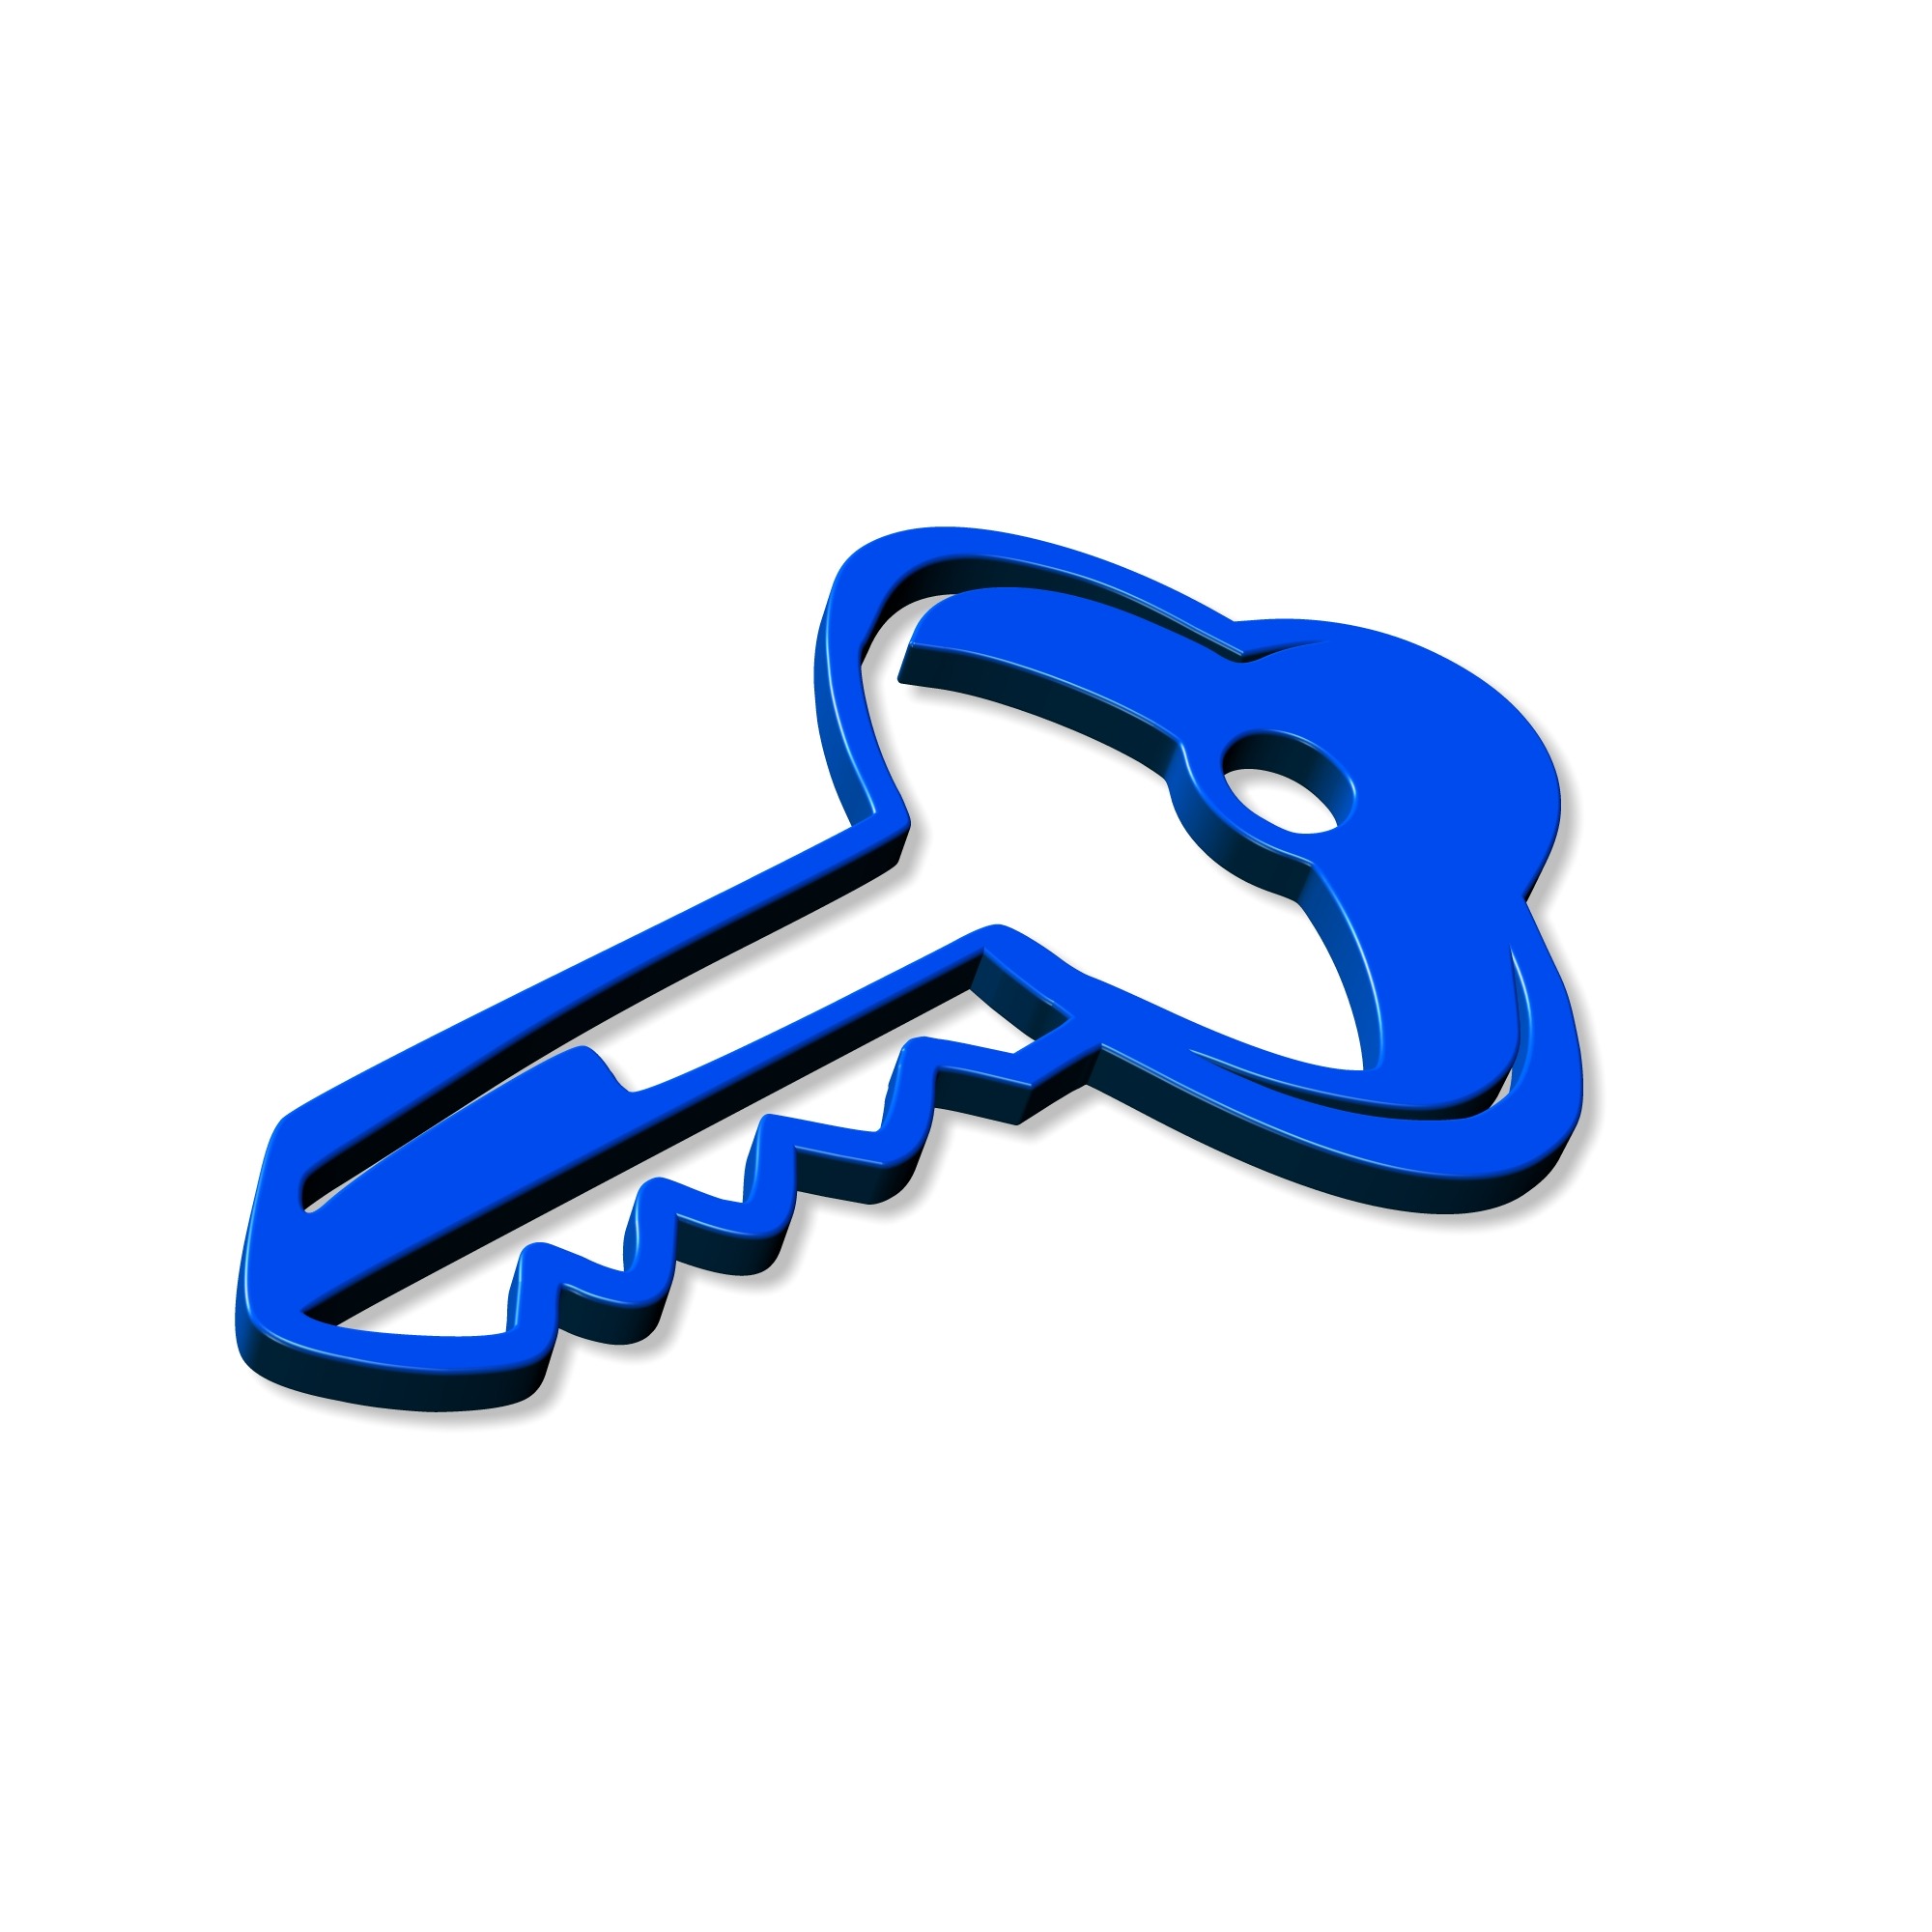 Покажи картинку ключ. Ключ. Ключ иллюстрация. Синий ключ. Ключ для дошкольников.